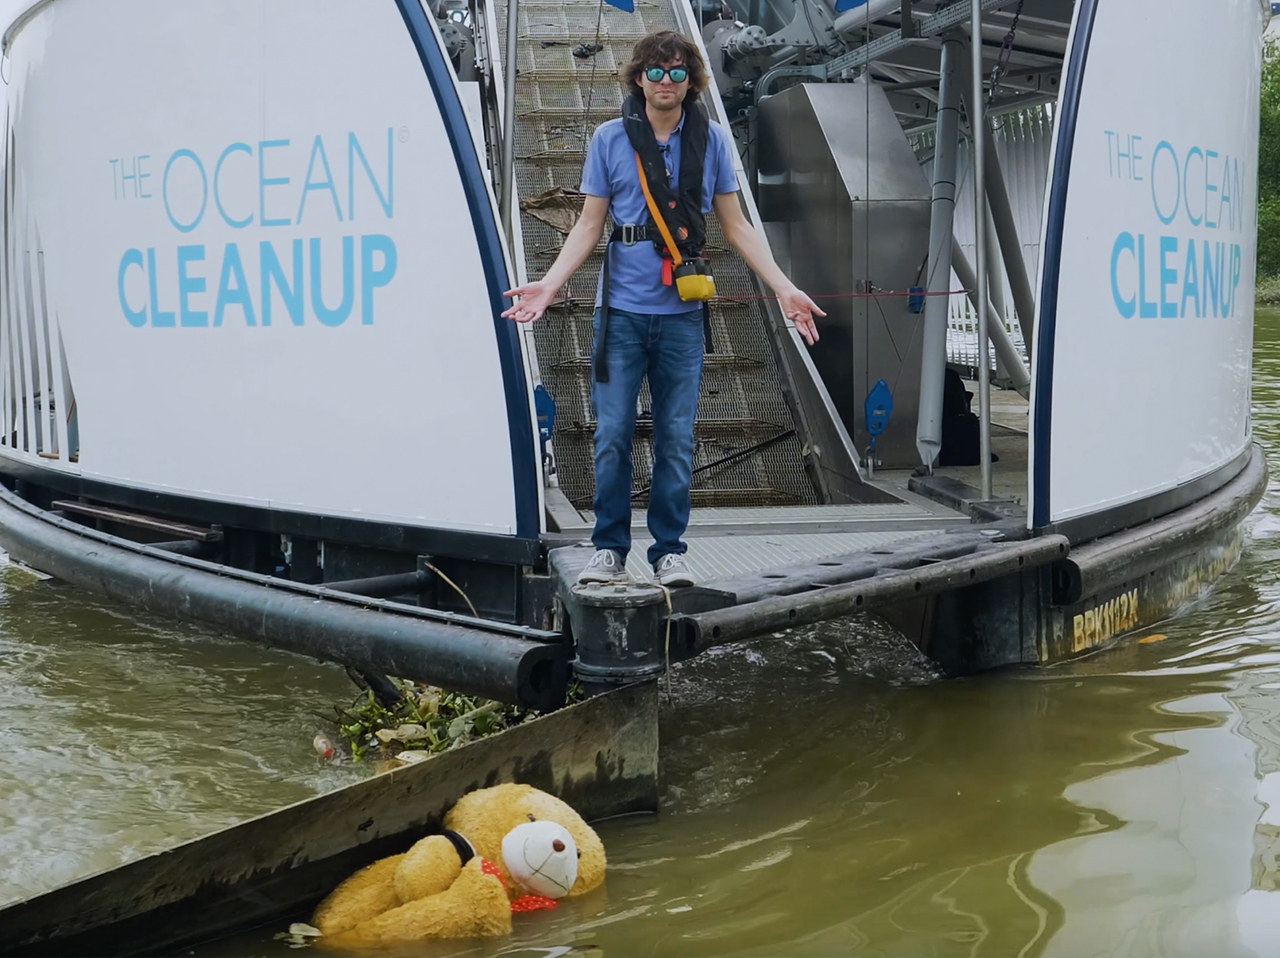 L’équipe découvre A "Ours" Tout en retirant 1 million de kg de déchets de la rivière Klang